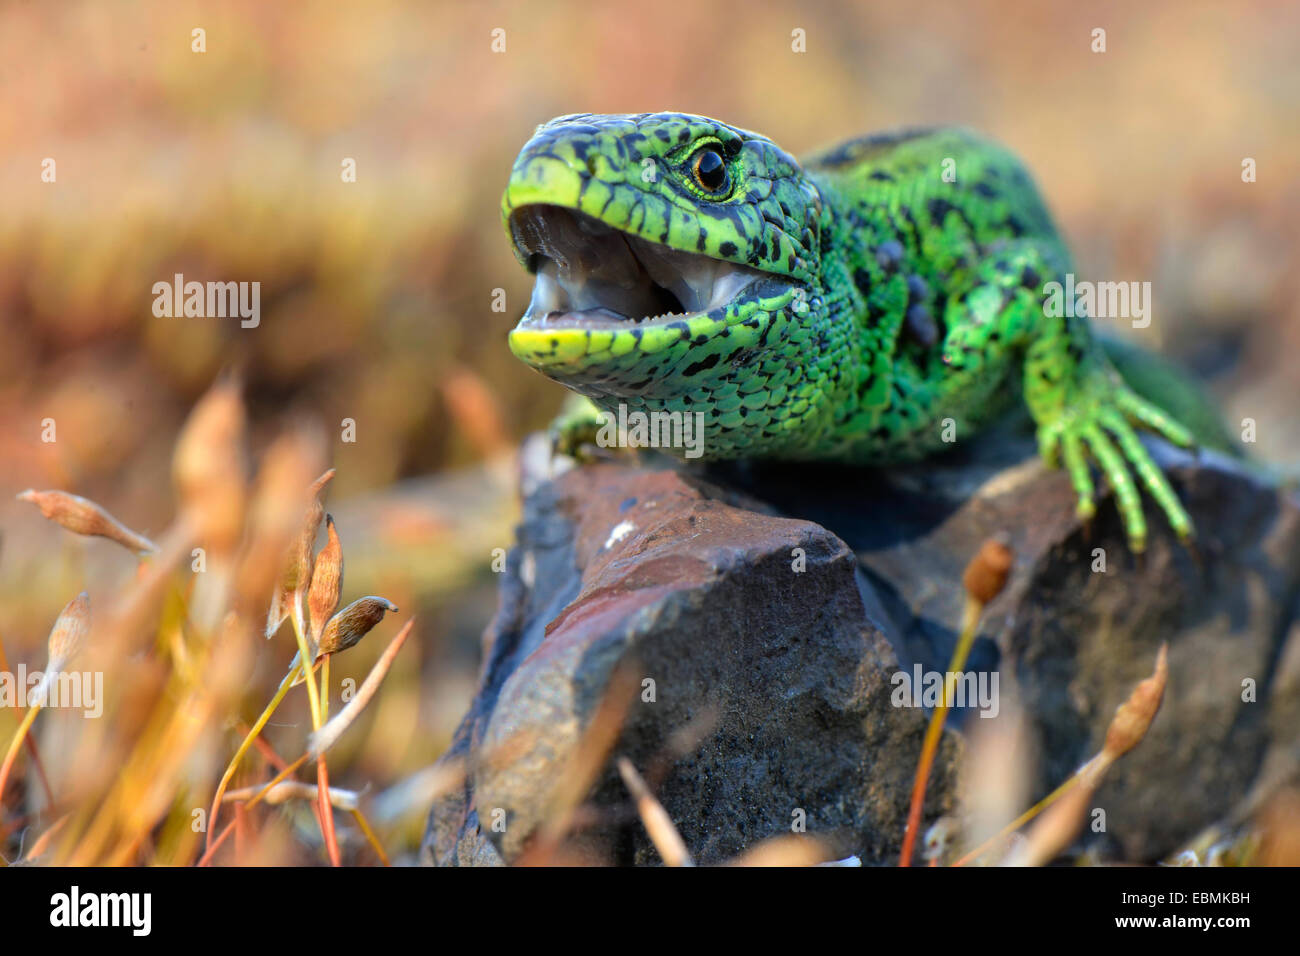 Sand lizard (Lacerta agilis), homme dans la reproduction des couleurs avec la bouche ouverte, menaçante, Rhénanie du Nord-Westphalie, Allemagne Banque D'Images